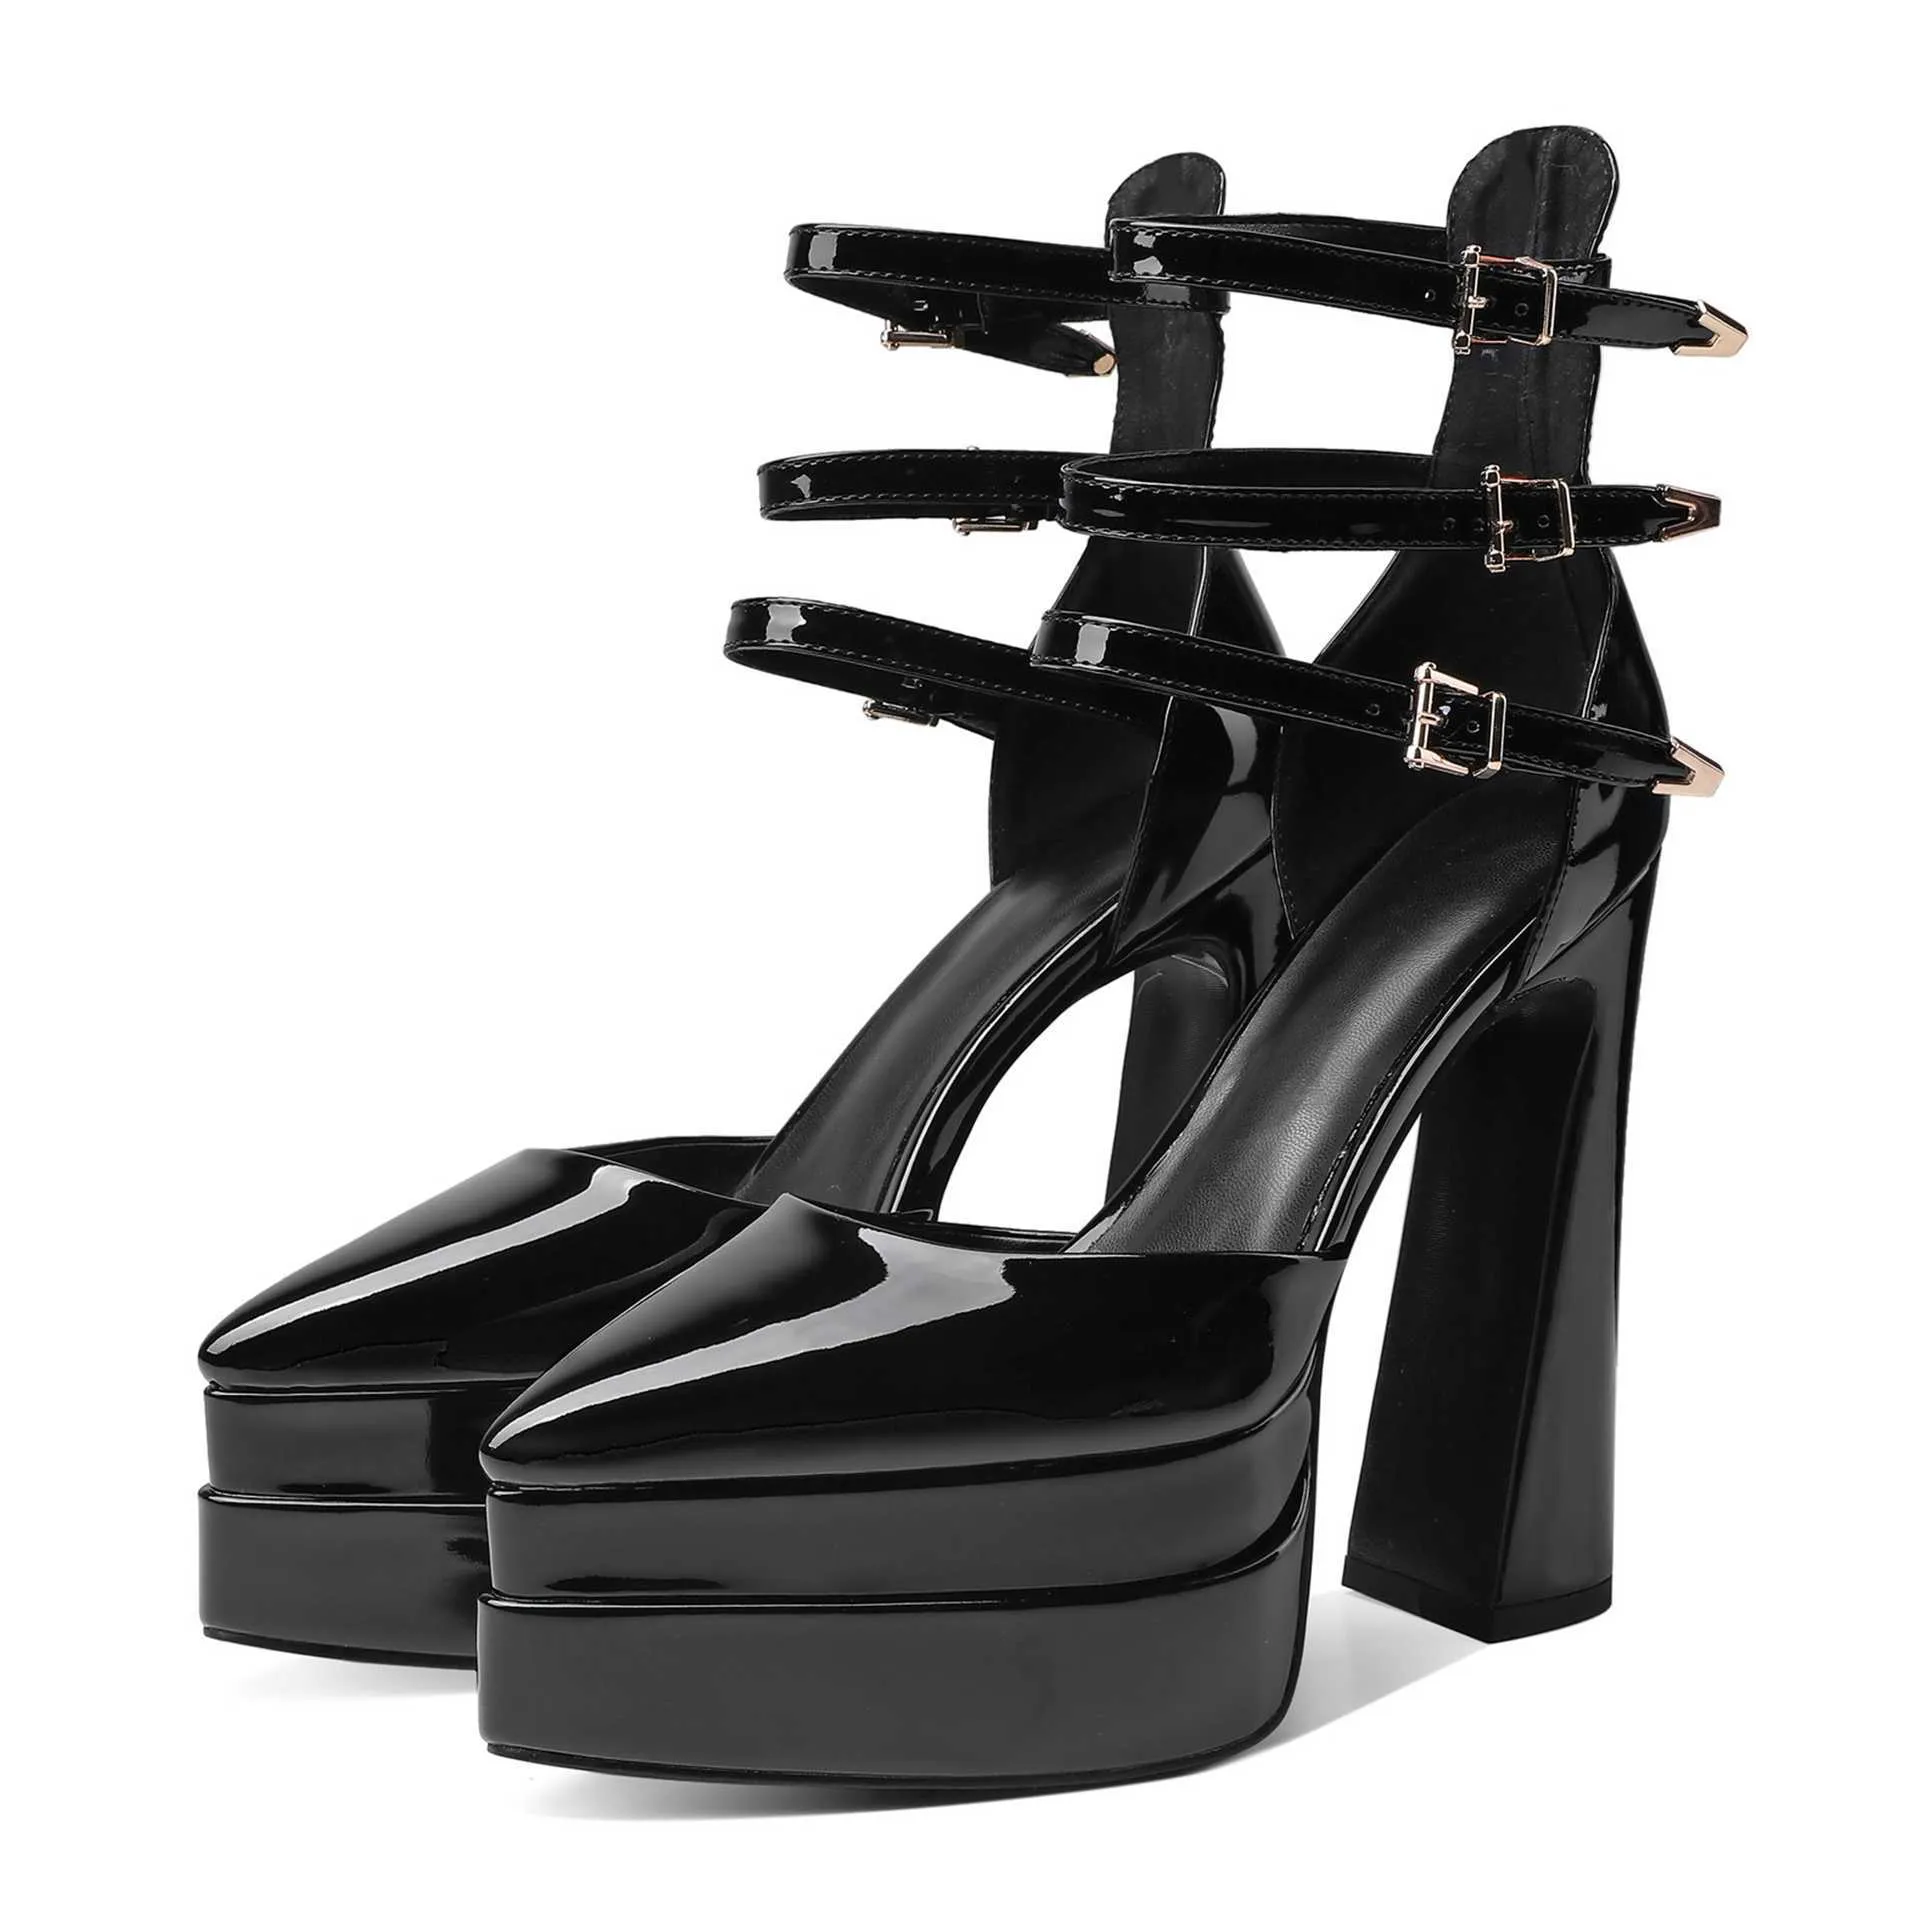 Sandalias- HBP bez marki luksusowa platforma projektowa spiczaste palce gęste imprezowe buty seksowne pompki wysokie obcasy damskie dla pani